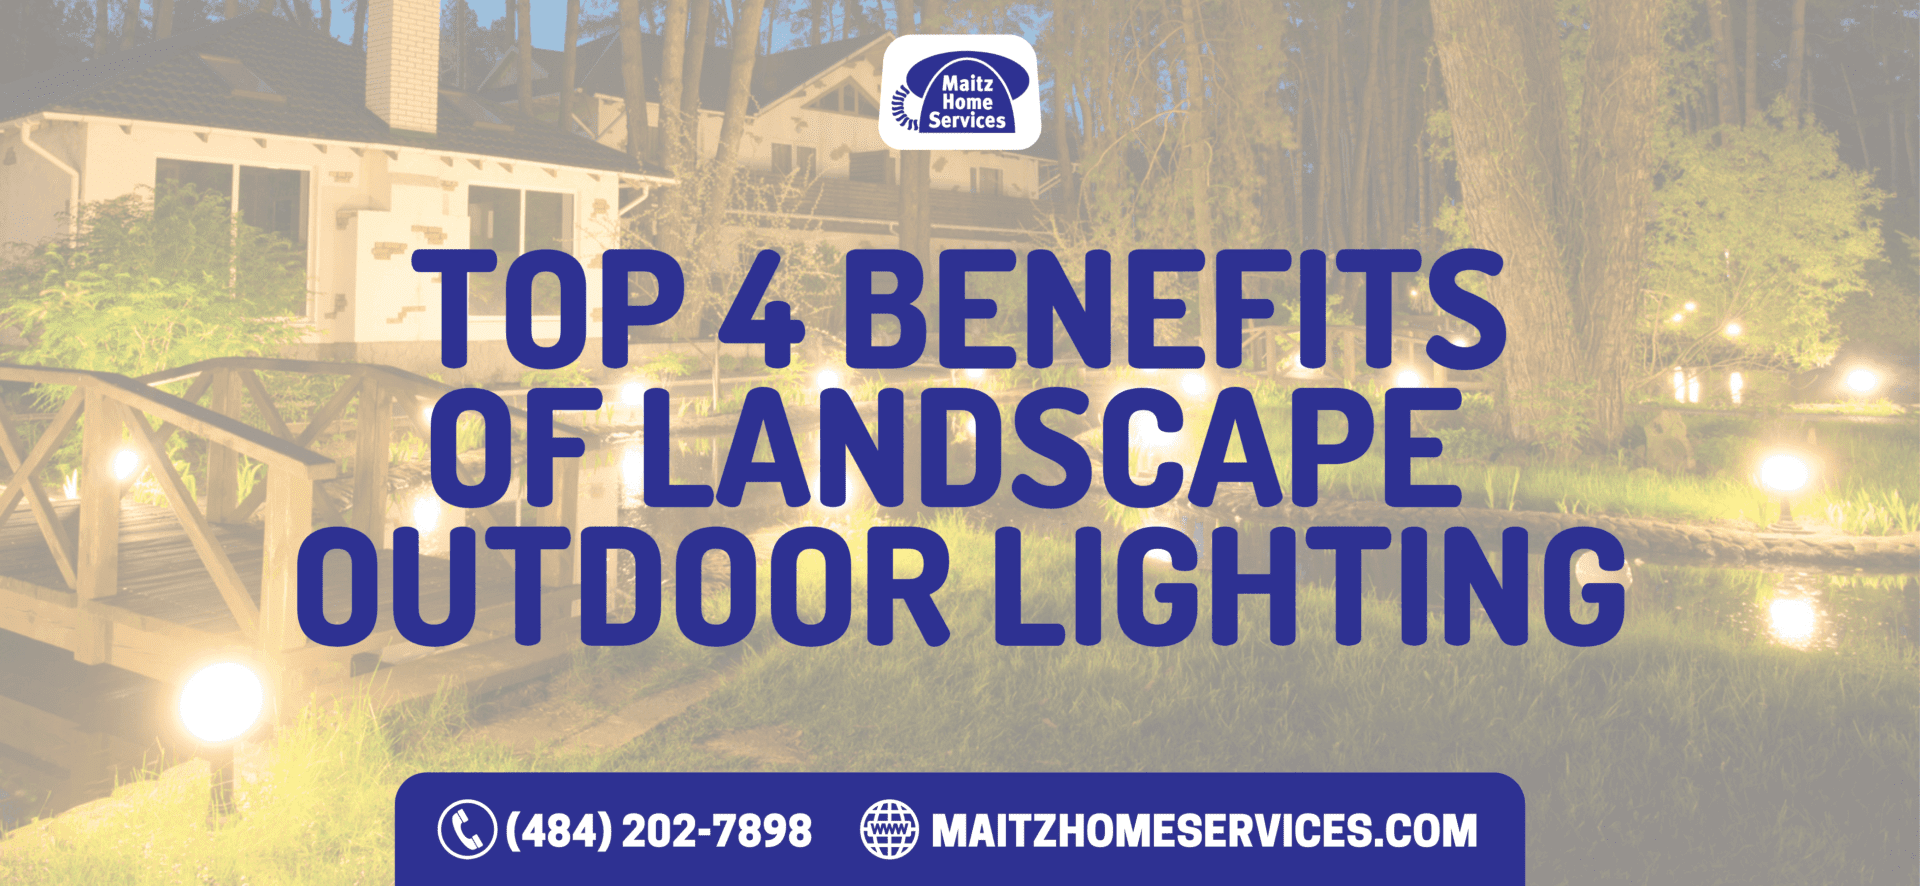 Top 4 Benefits of Landscape Outdoor Lighting